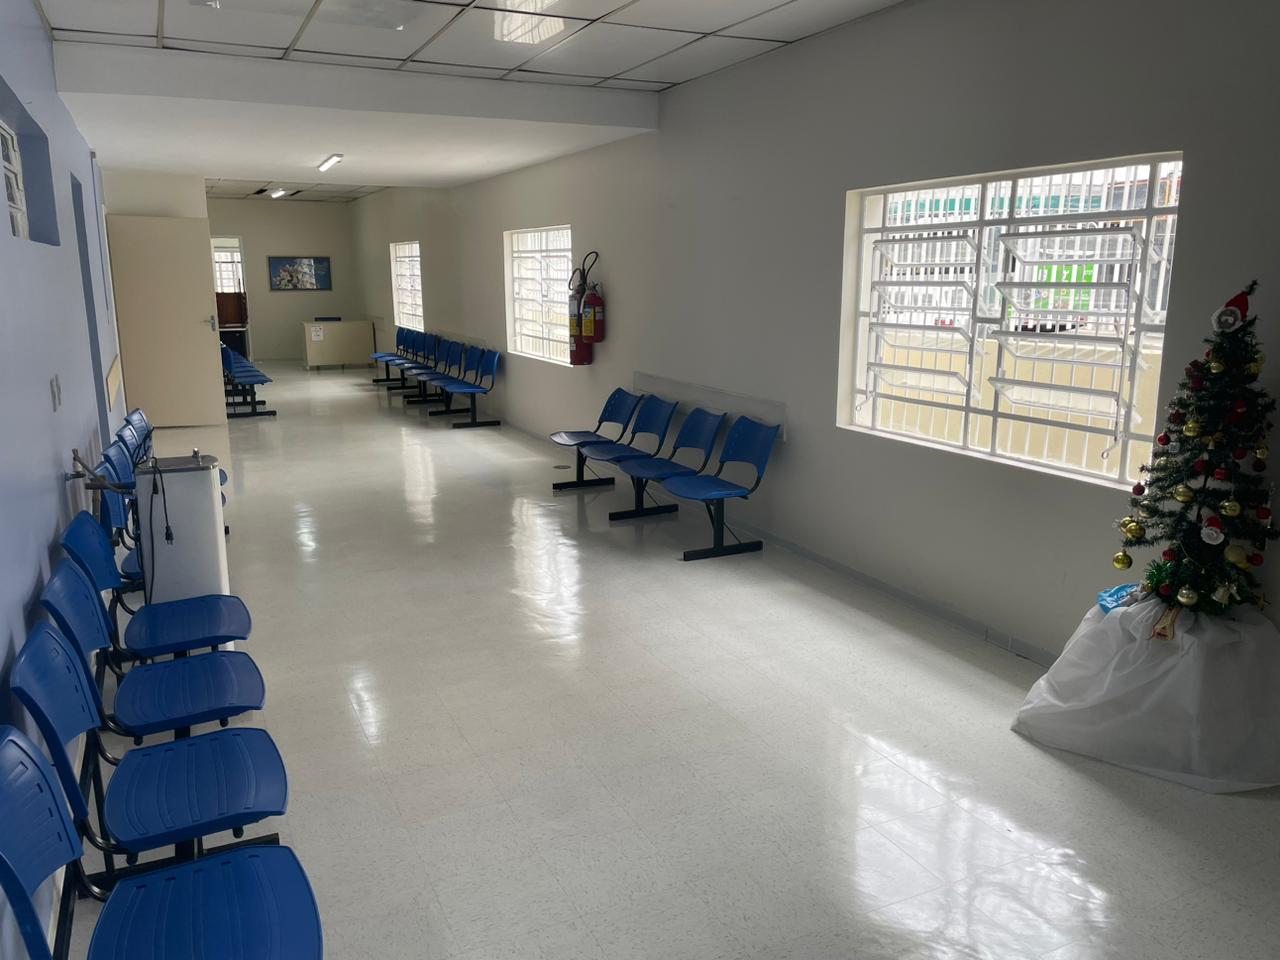 Imagem panorâmica do corredor do Ambulatório Lapa, com cadeiras encostadas na parede, mostrando o novo piso